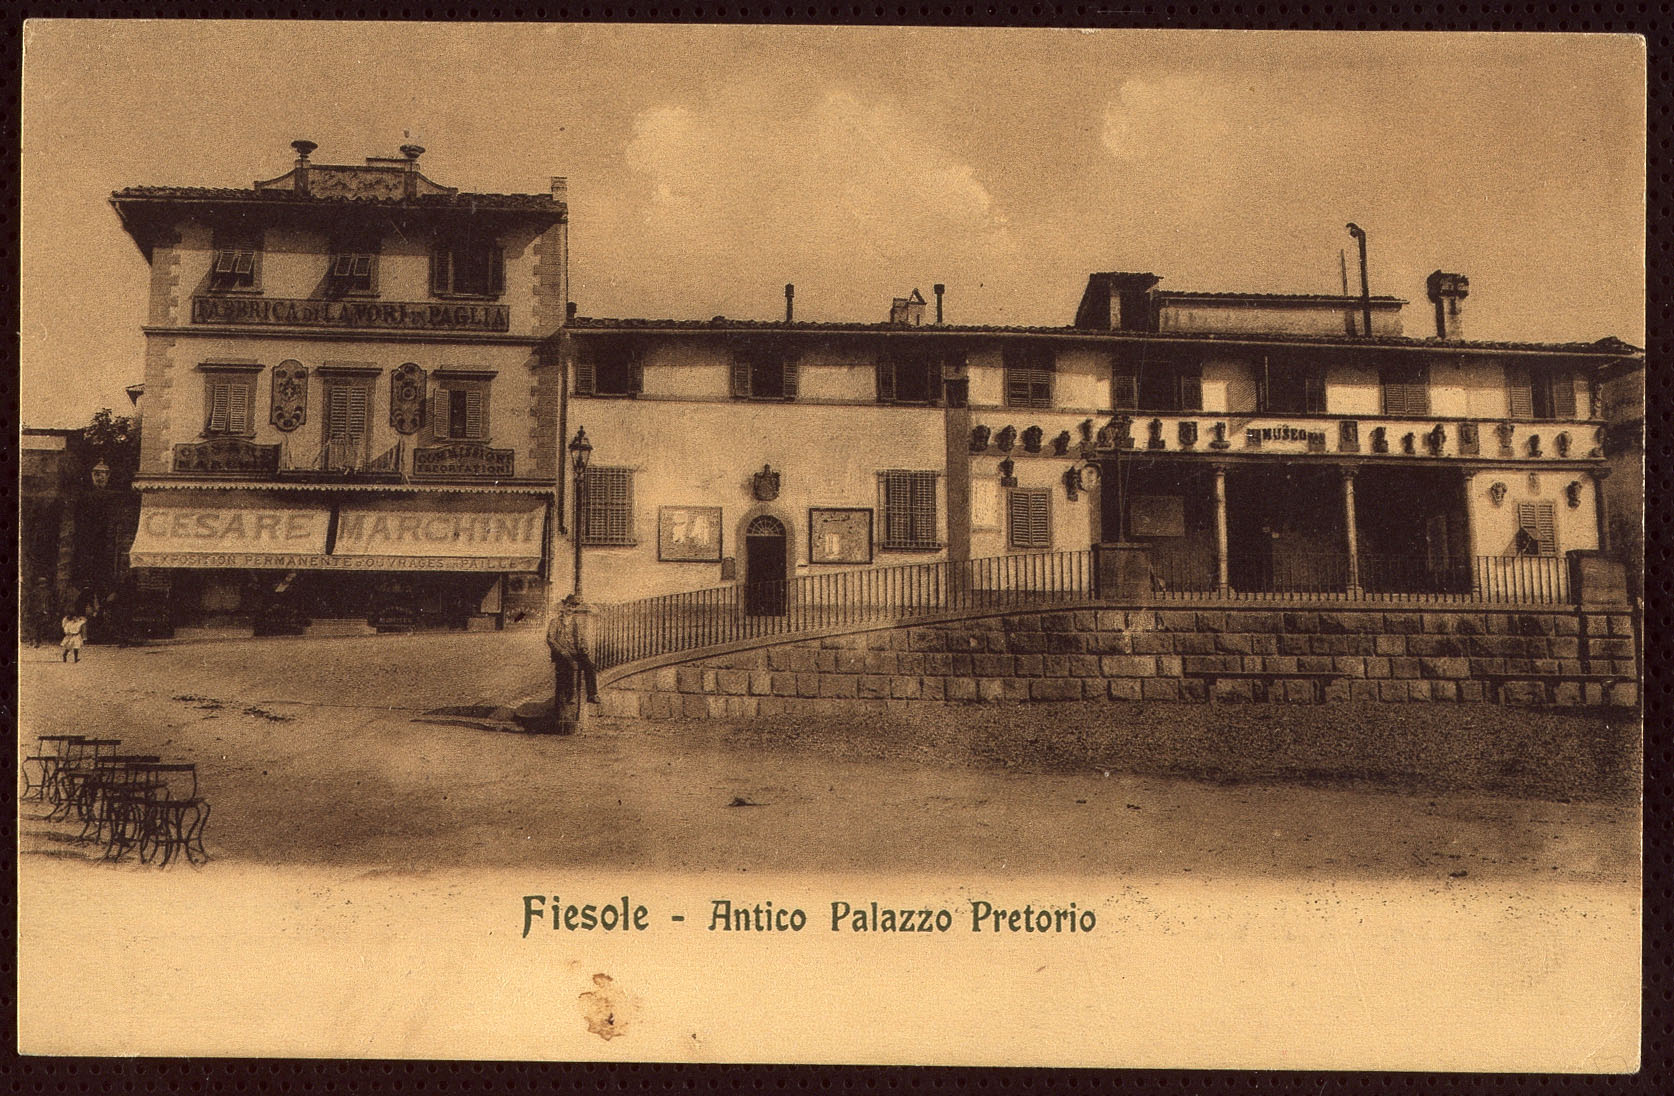 Archivio comunale di Fiesole, fondo cartoline antiche